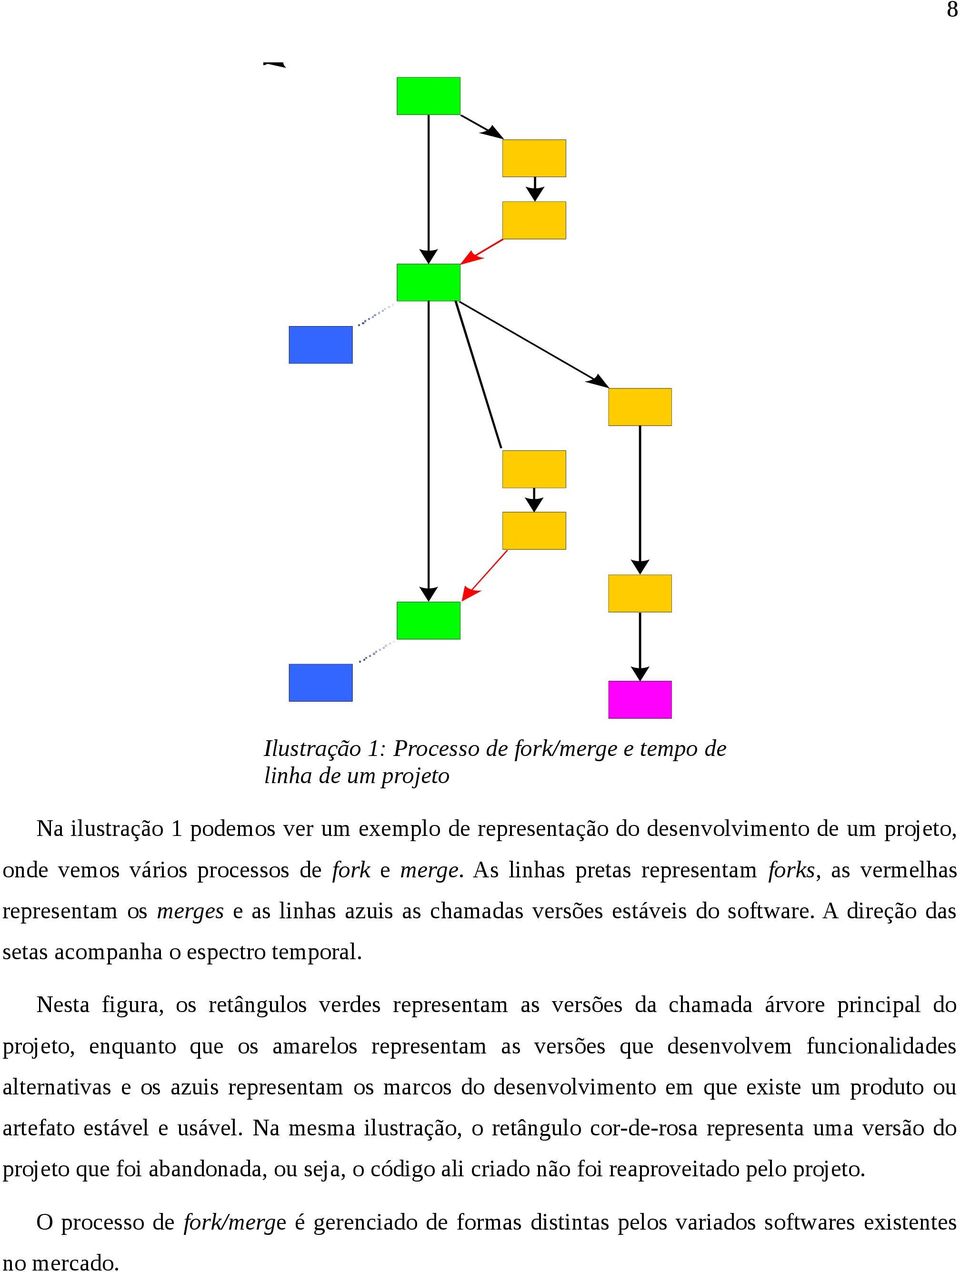 Nesta figura, os retângulos verdes representam as versões da chamada árvore principal do projeto, enquanto que os amarelos representam as versões que desenvolvem funcionalidades alternativas e os